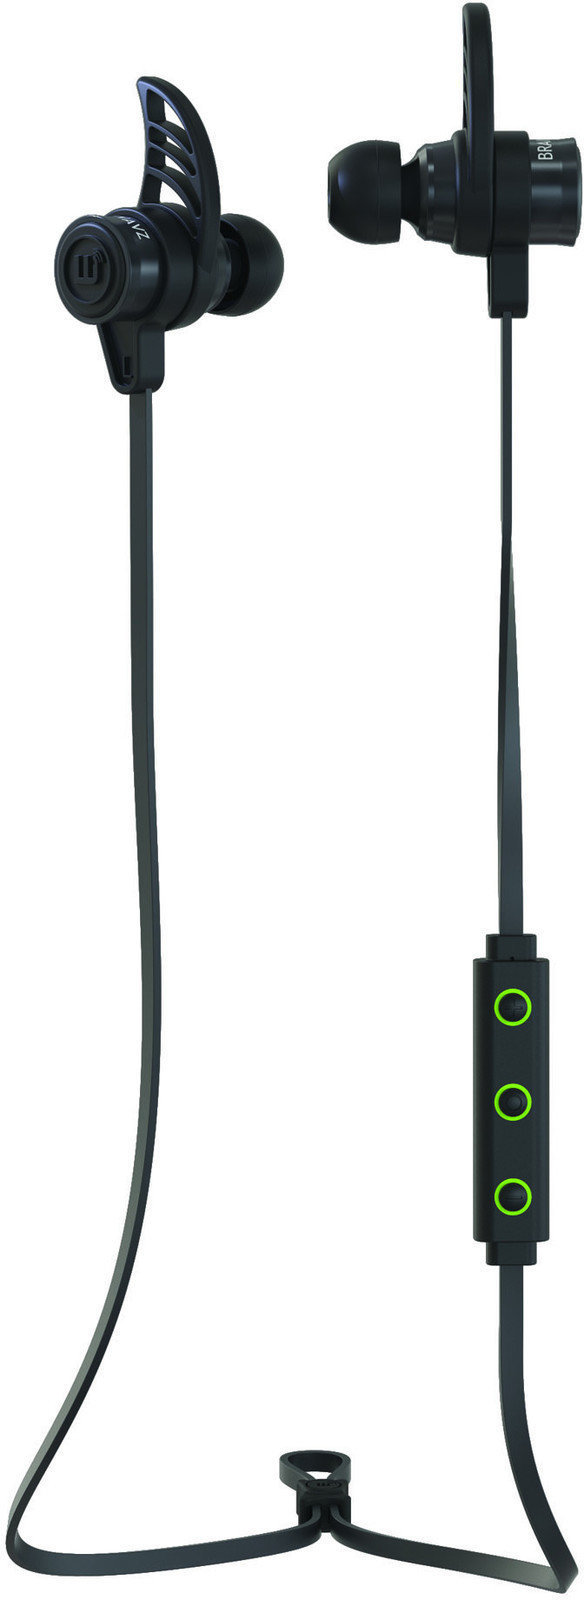 Ασύρματο Ακουστικό In-ear Brainwavz BLU-200 Bluetooth 4.0 aptX In-Ear Earphones Black